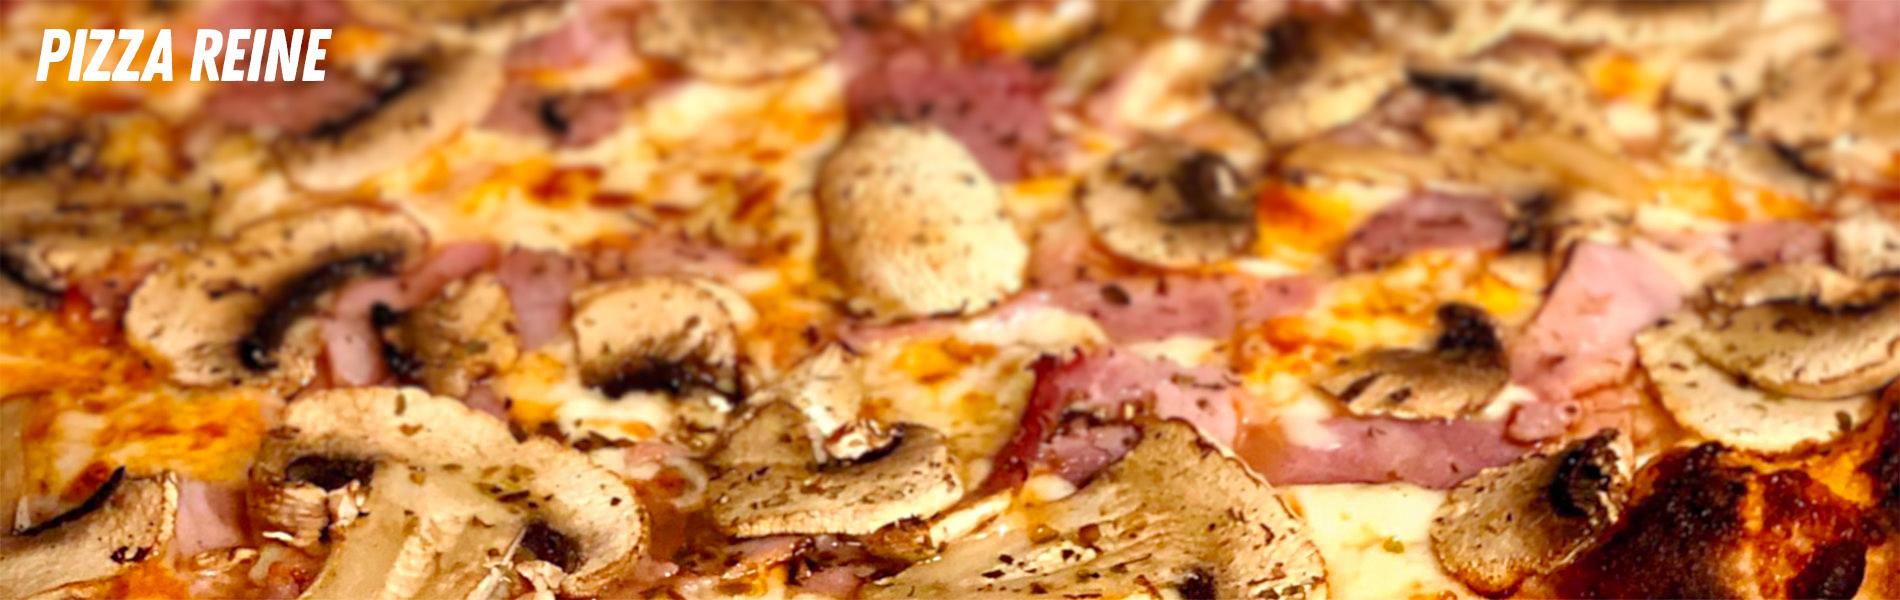 Pizza reine bandeau